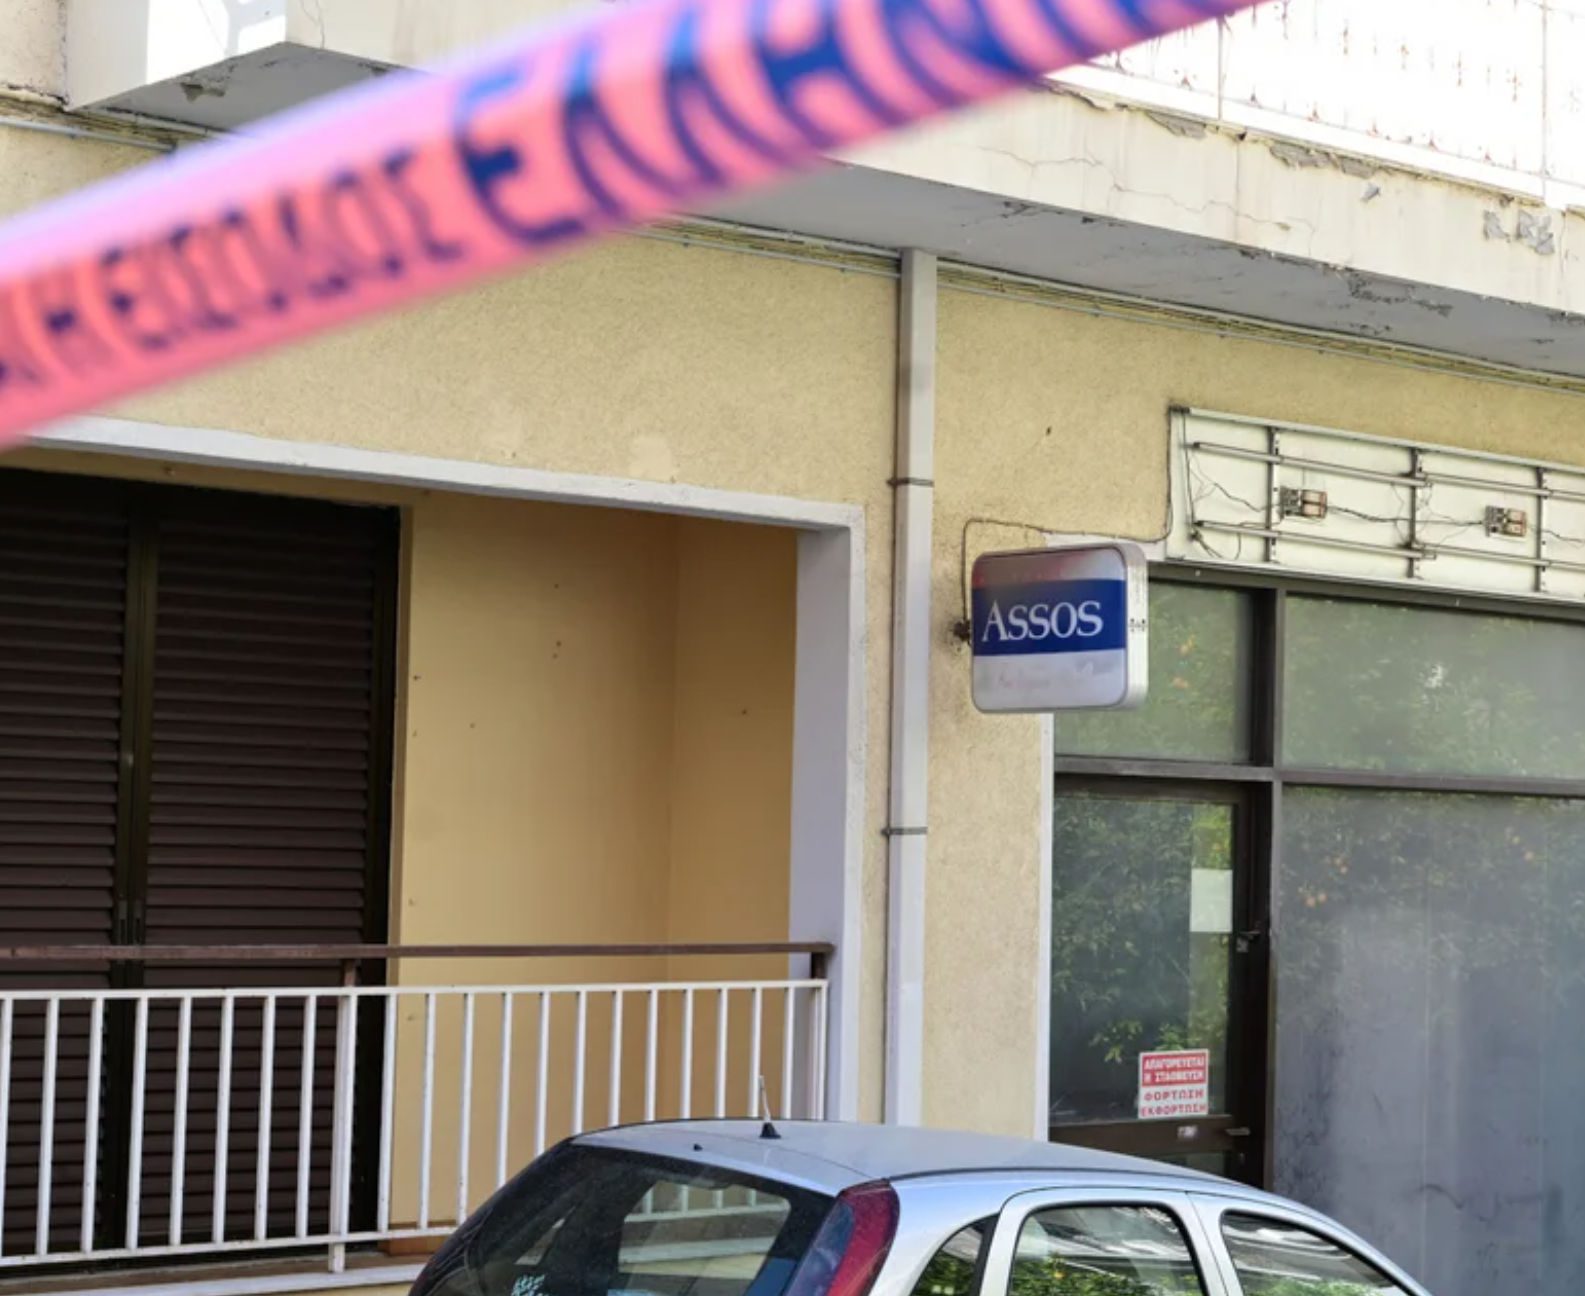 Φονικό στην Ηλιούπολη: Βρέθηκαν αποτυπώματα του γιου στην καραμπίνα